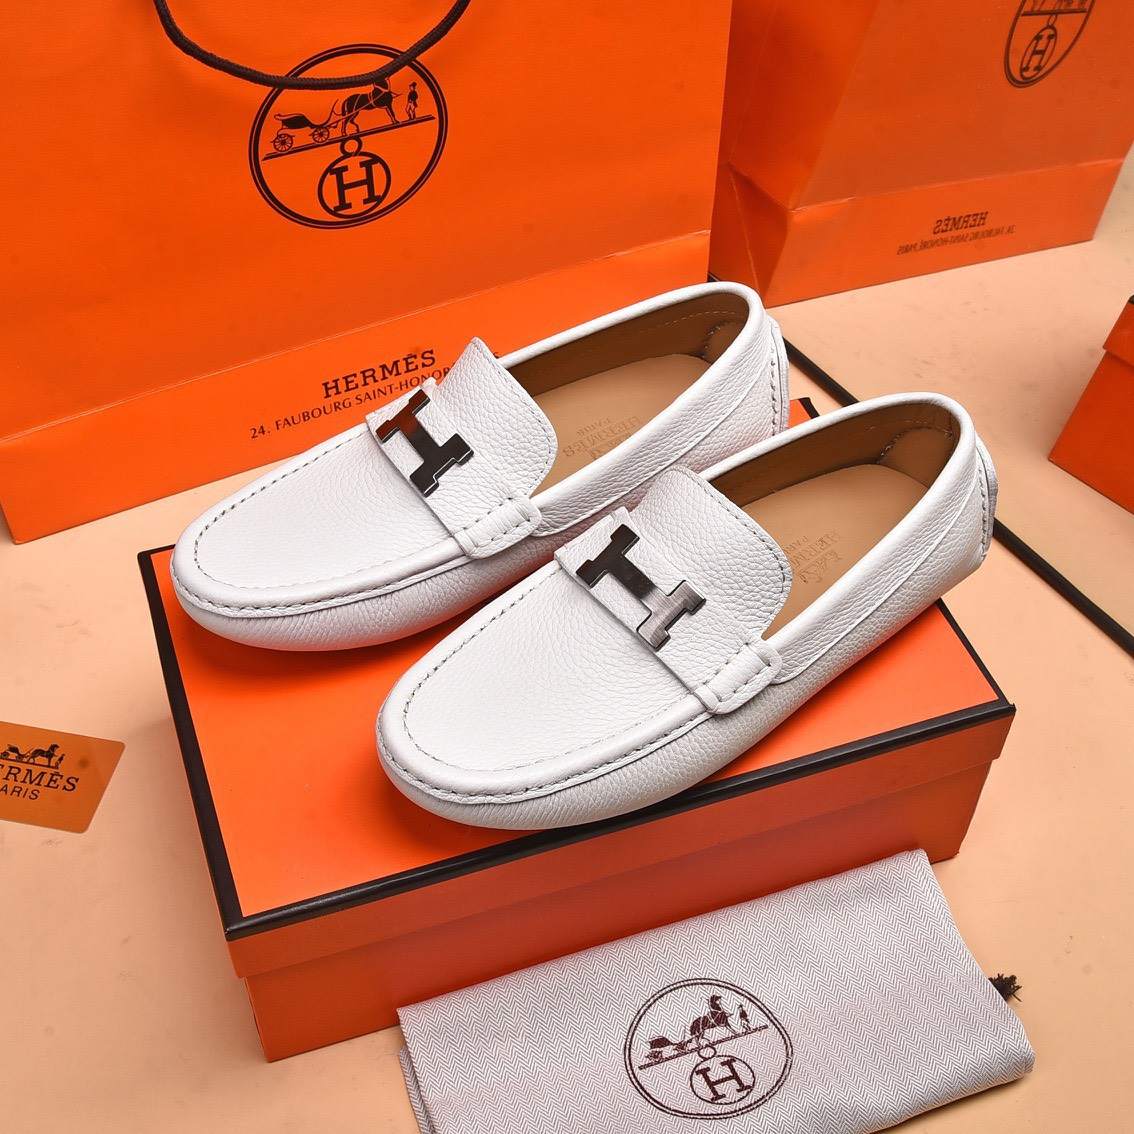 TUNG LUXURY - Đơn vị uy tín, chất lượng cung cấp giày Hermes giá tốt.